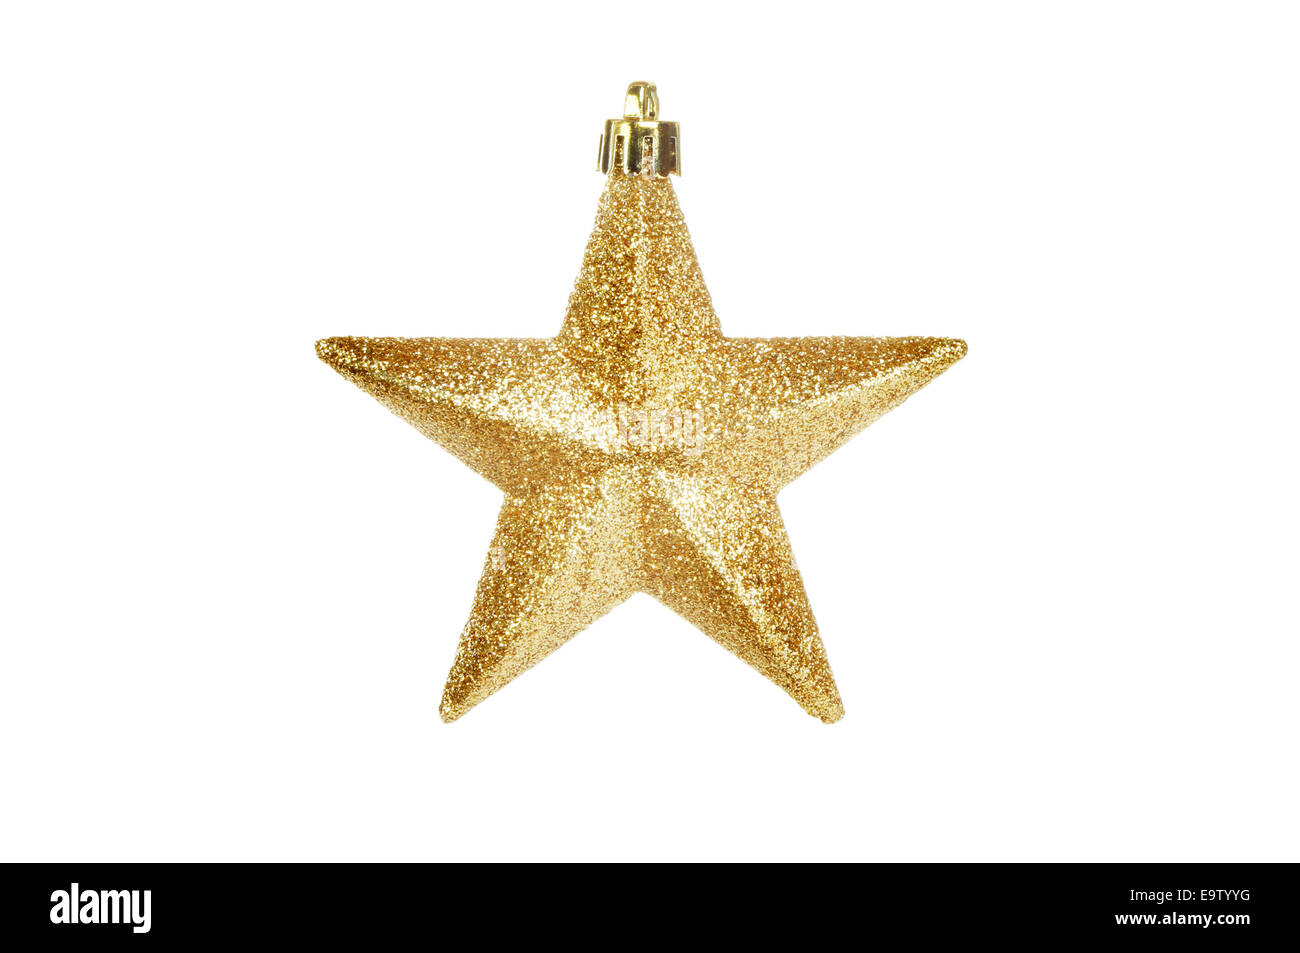 Natale glitter gold star ornamento della struttura isolata contro bianco Foto Stock